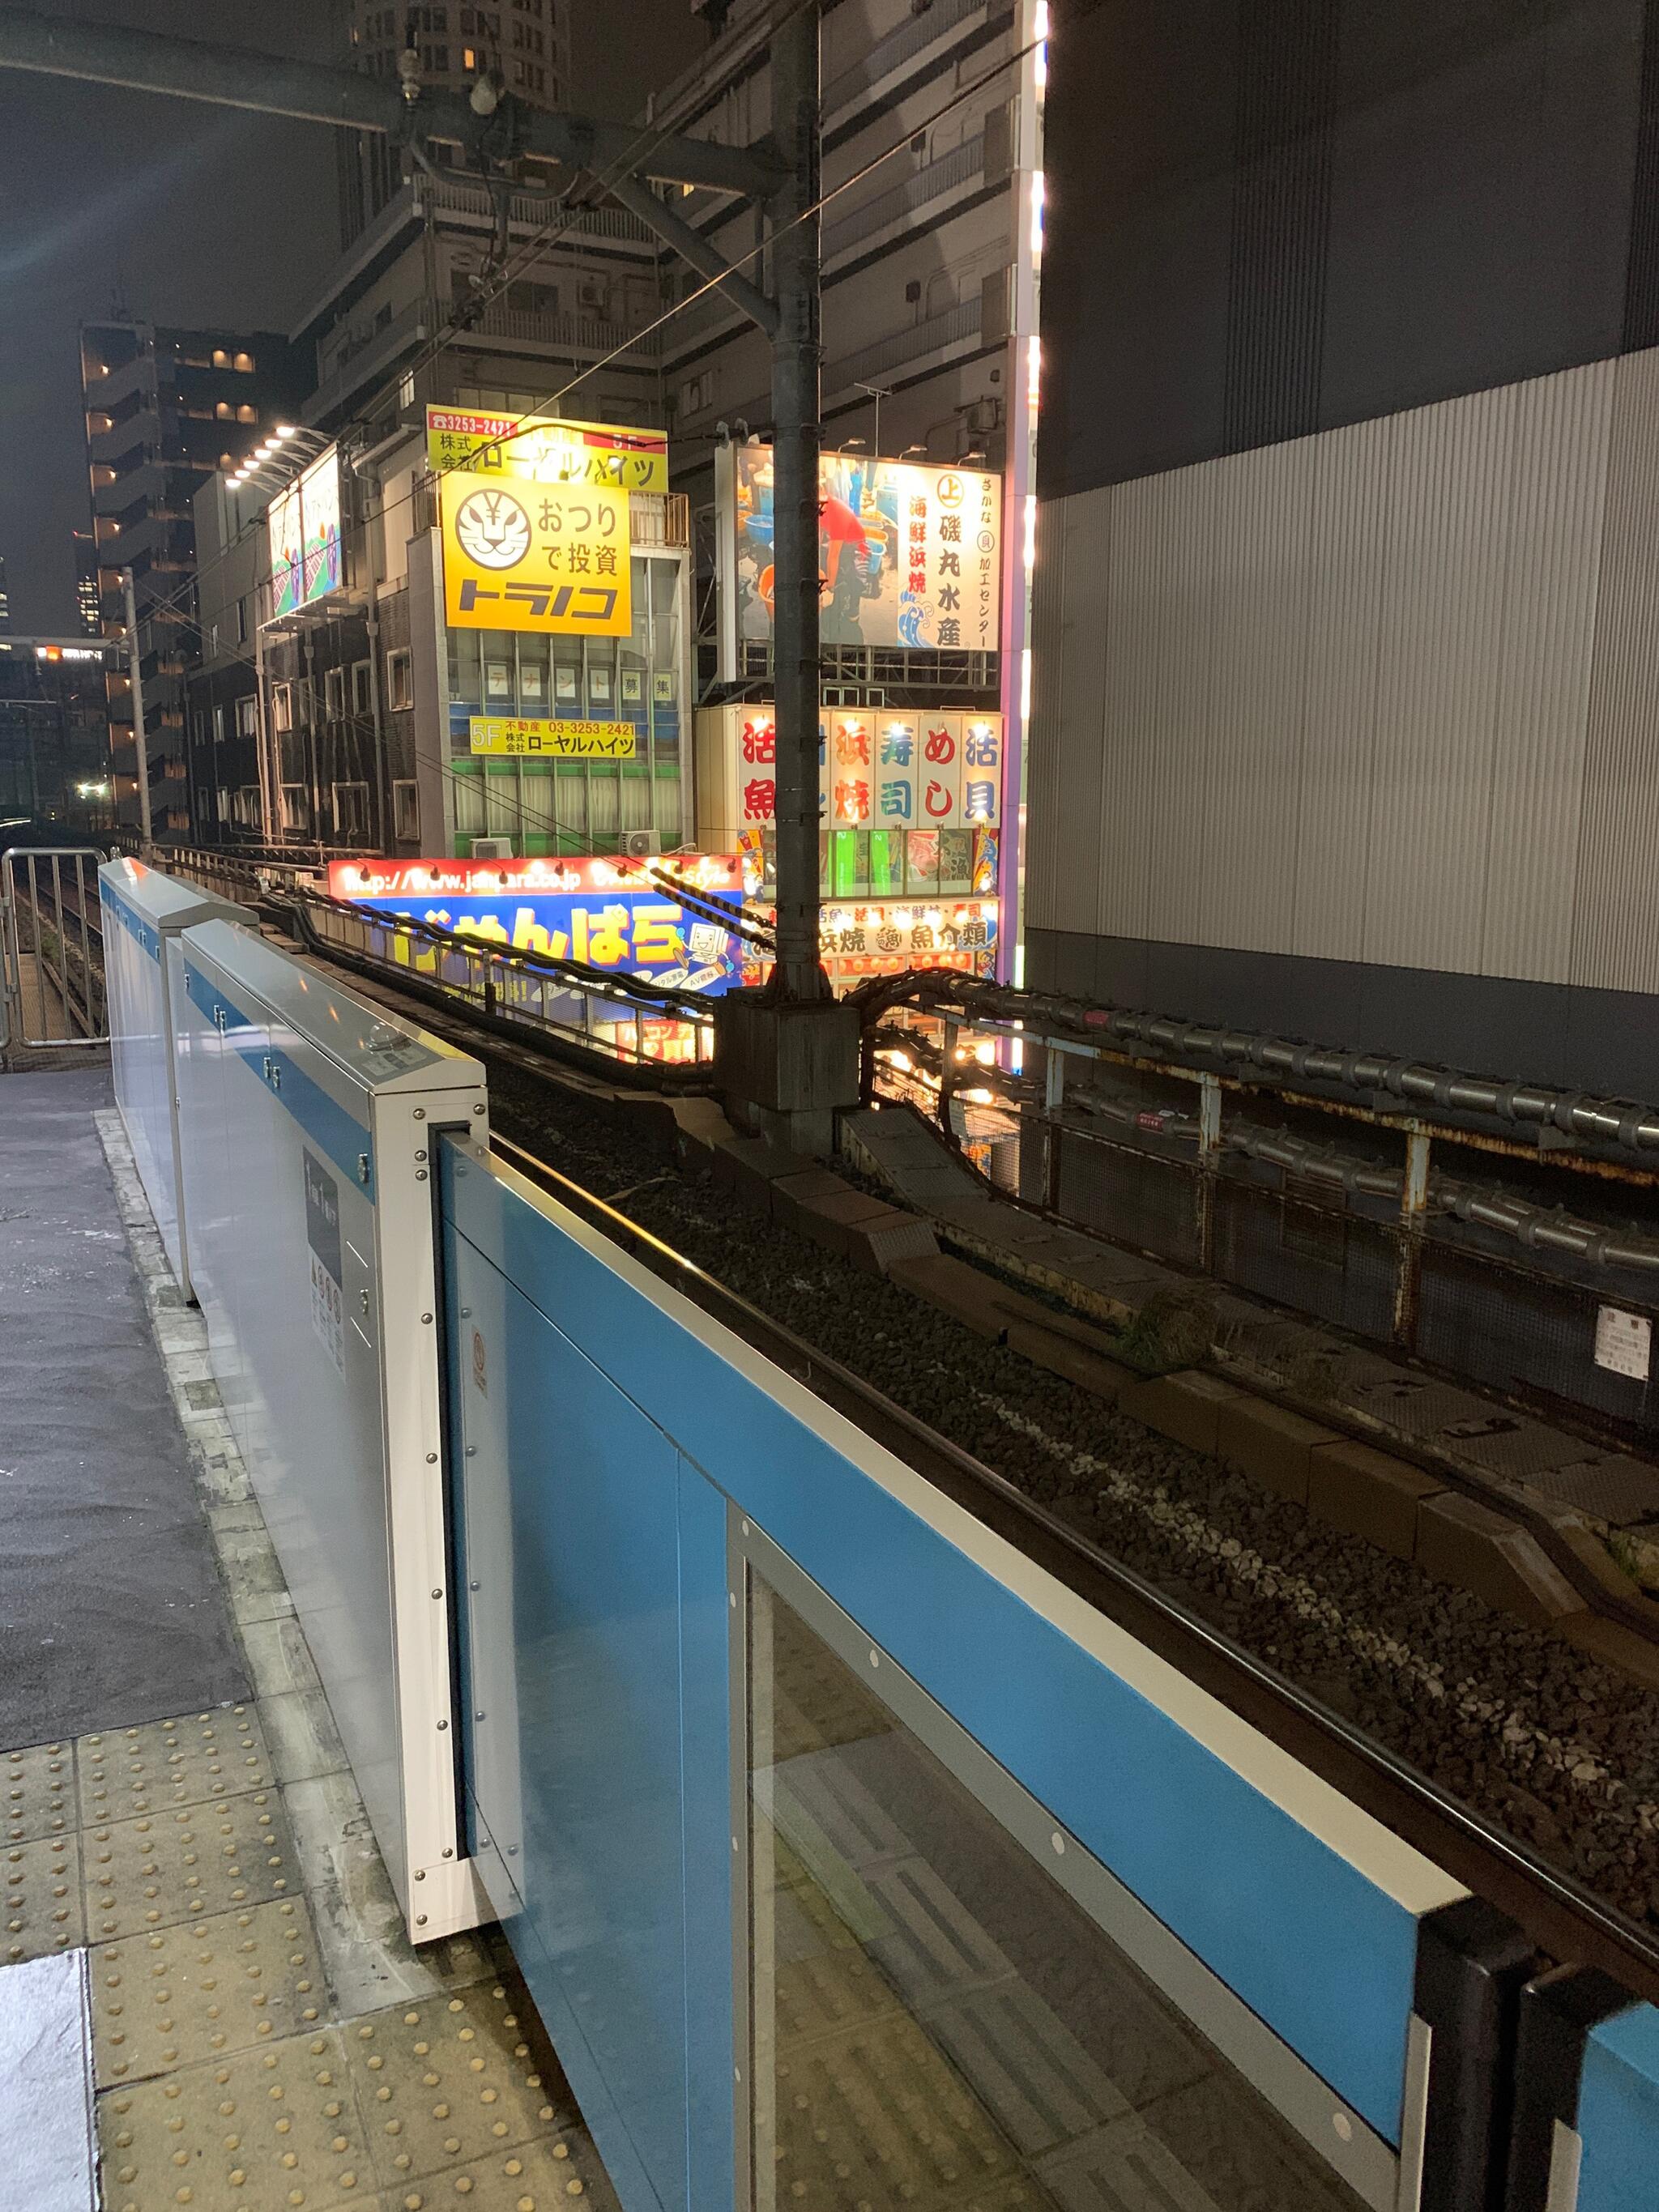 Akihabara Station 秋葉原駅 on Tumblr